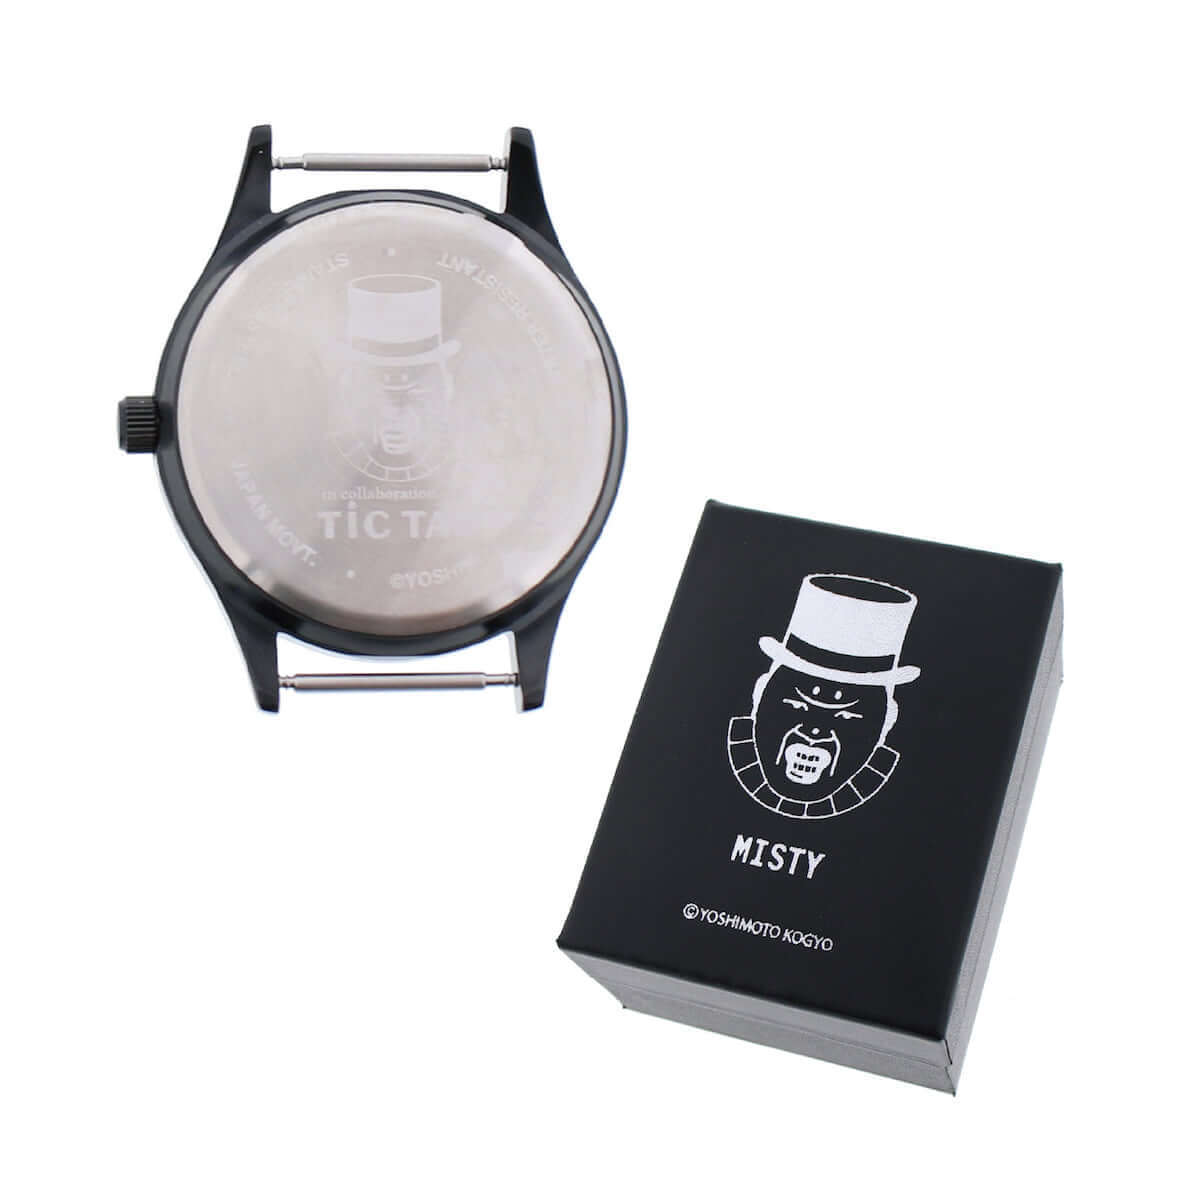 腕時計「TiCTAC」と野生爆弾くっきーのコラボ「ミスティ」と「バランスおじさん」の2種が限定発売 art-culture190109-tic-tac-5-1200x1200